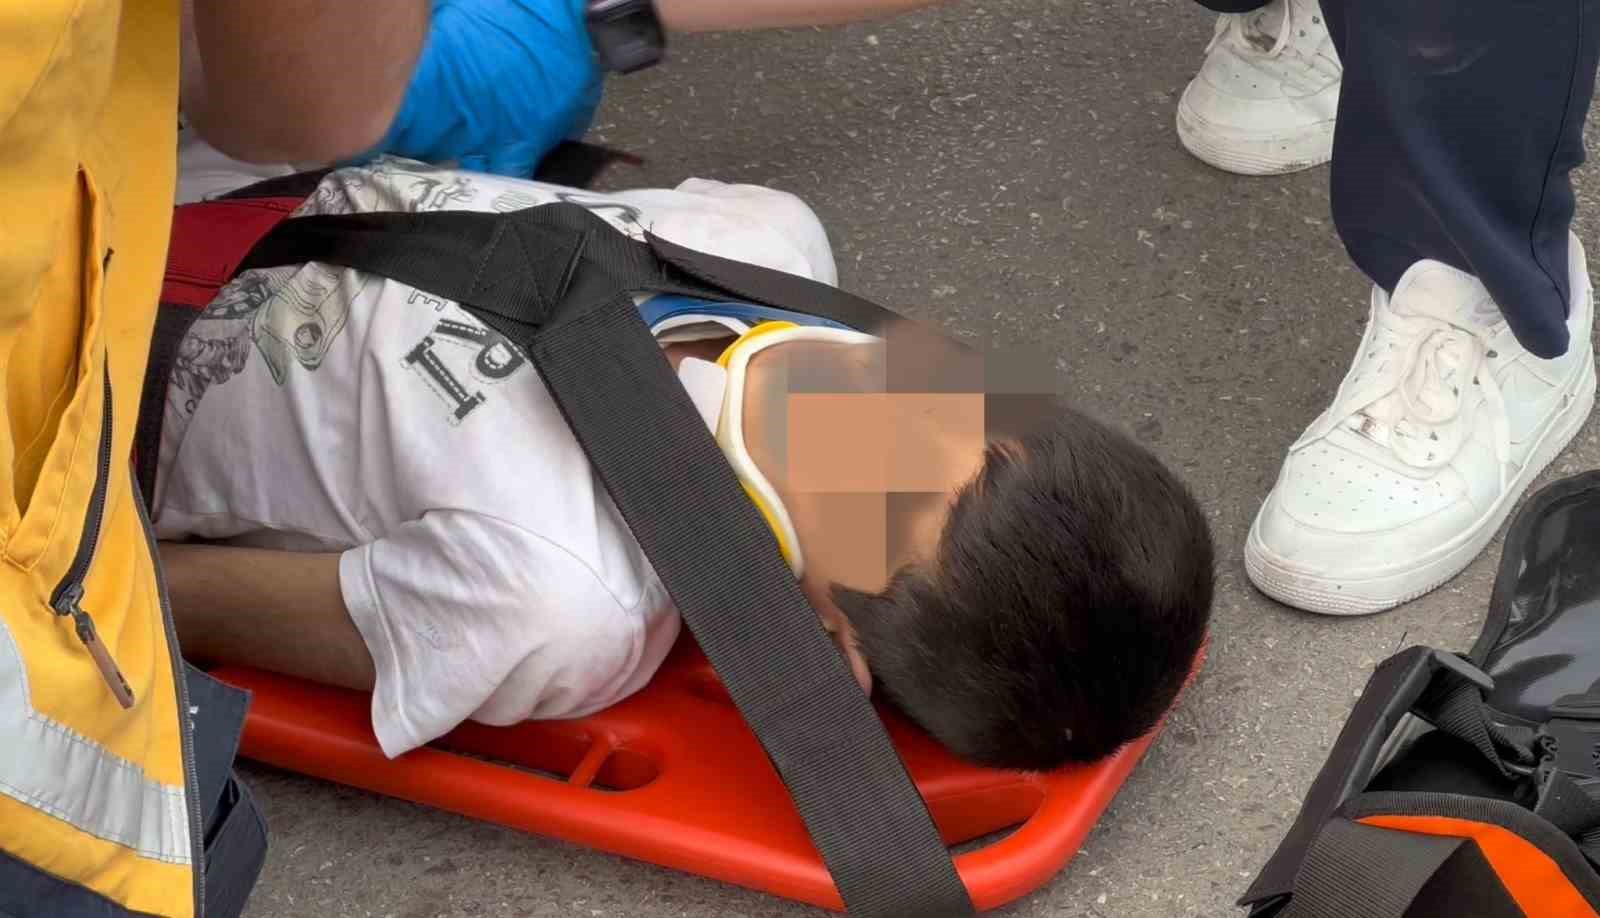 Motokuryenin çarptığı 9 yaşındaki çocuk yaralandı
